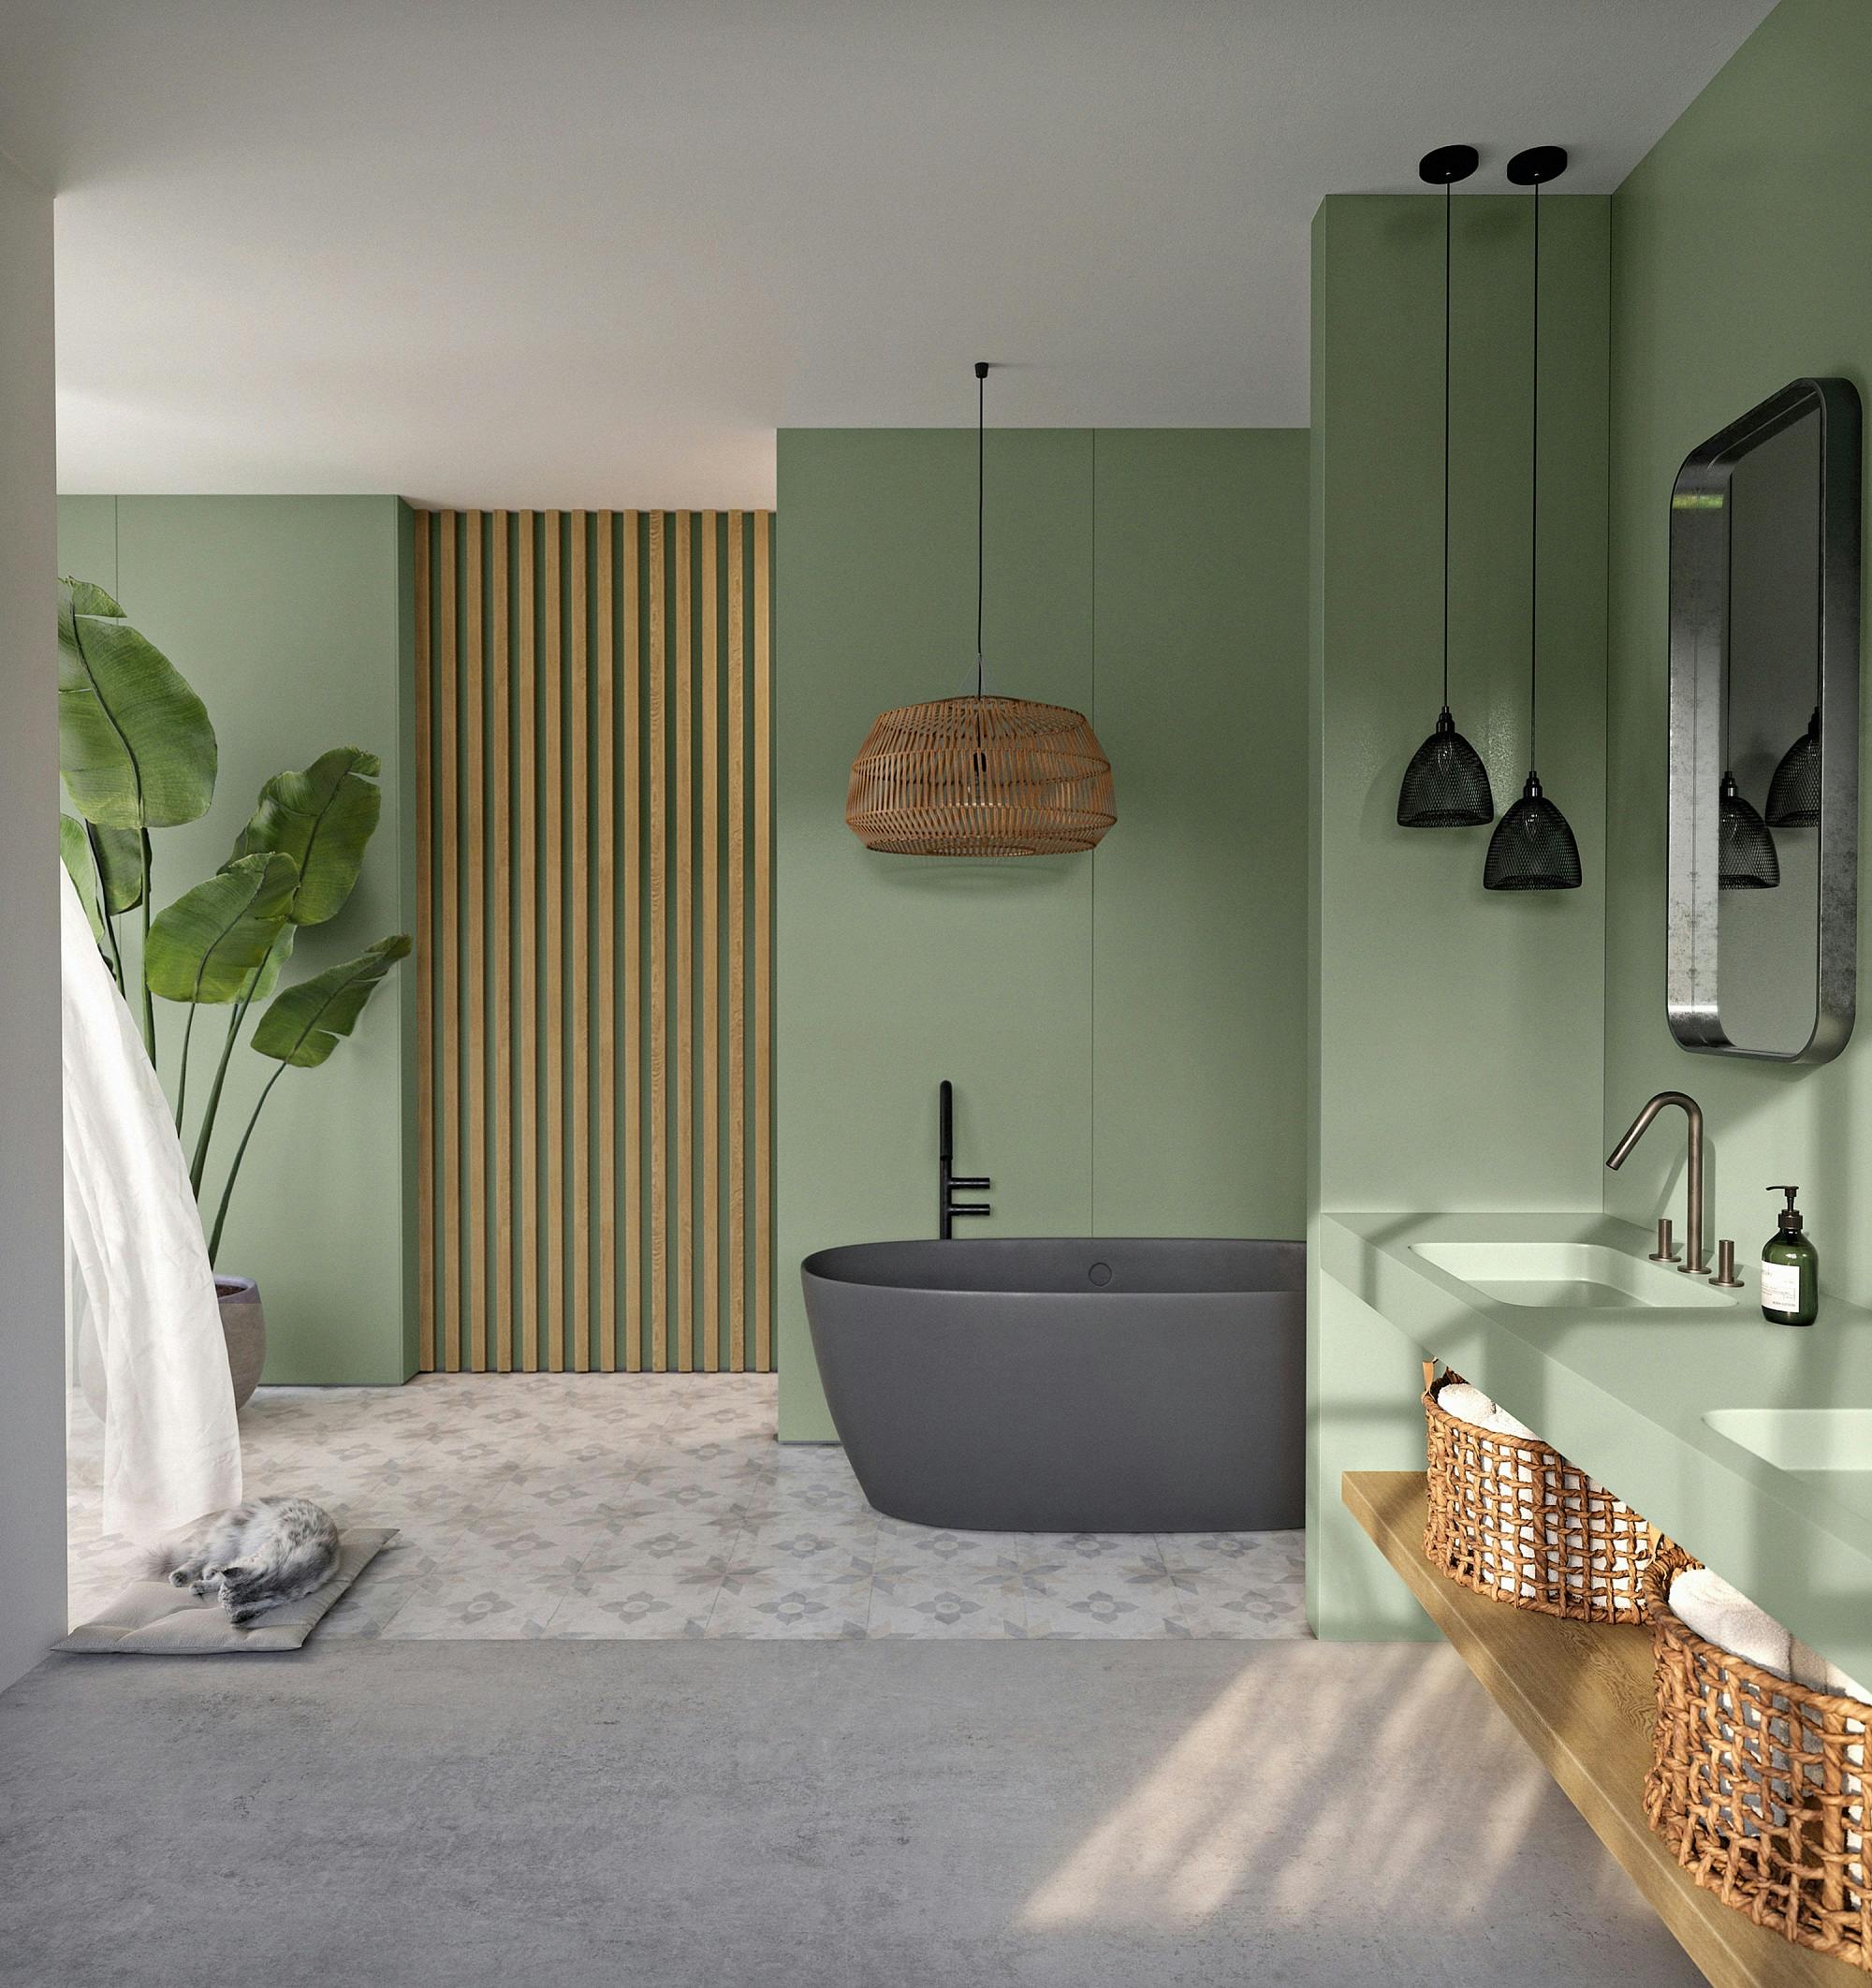 Numero immagine 32 della sezione corrente di {{The master bathroom, the new central space in your home}} di Cosentino Italia